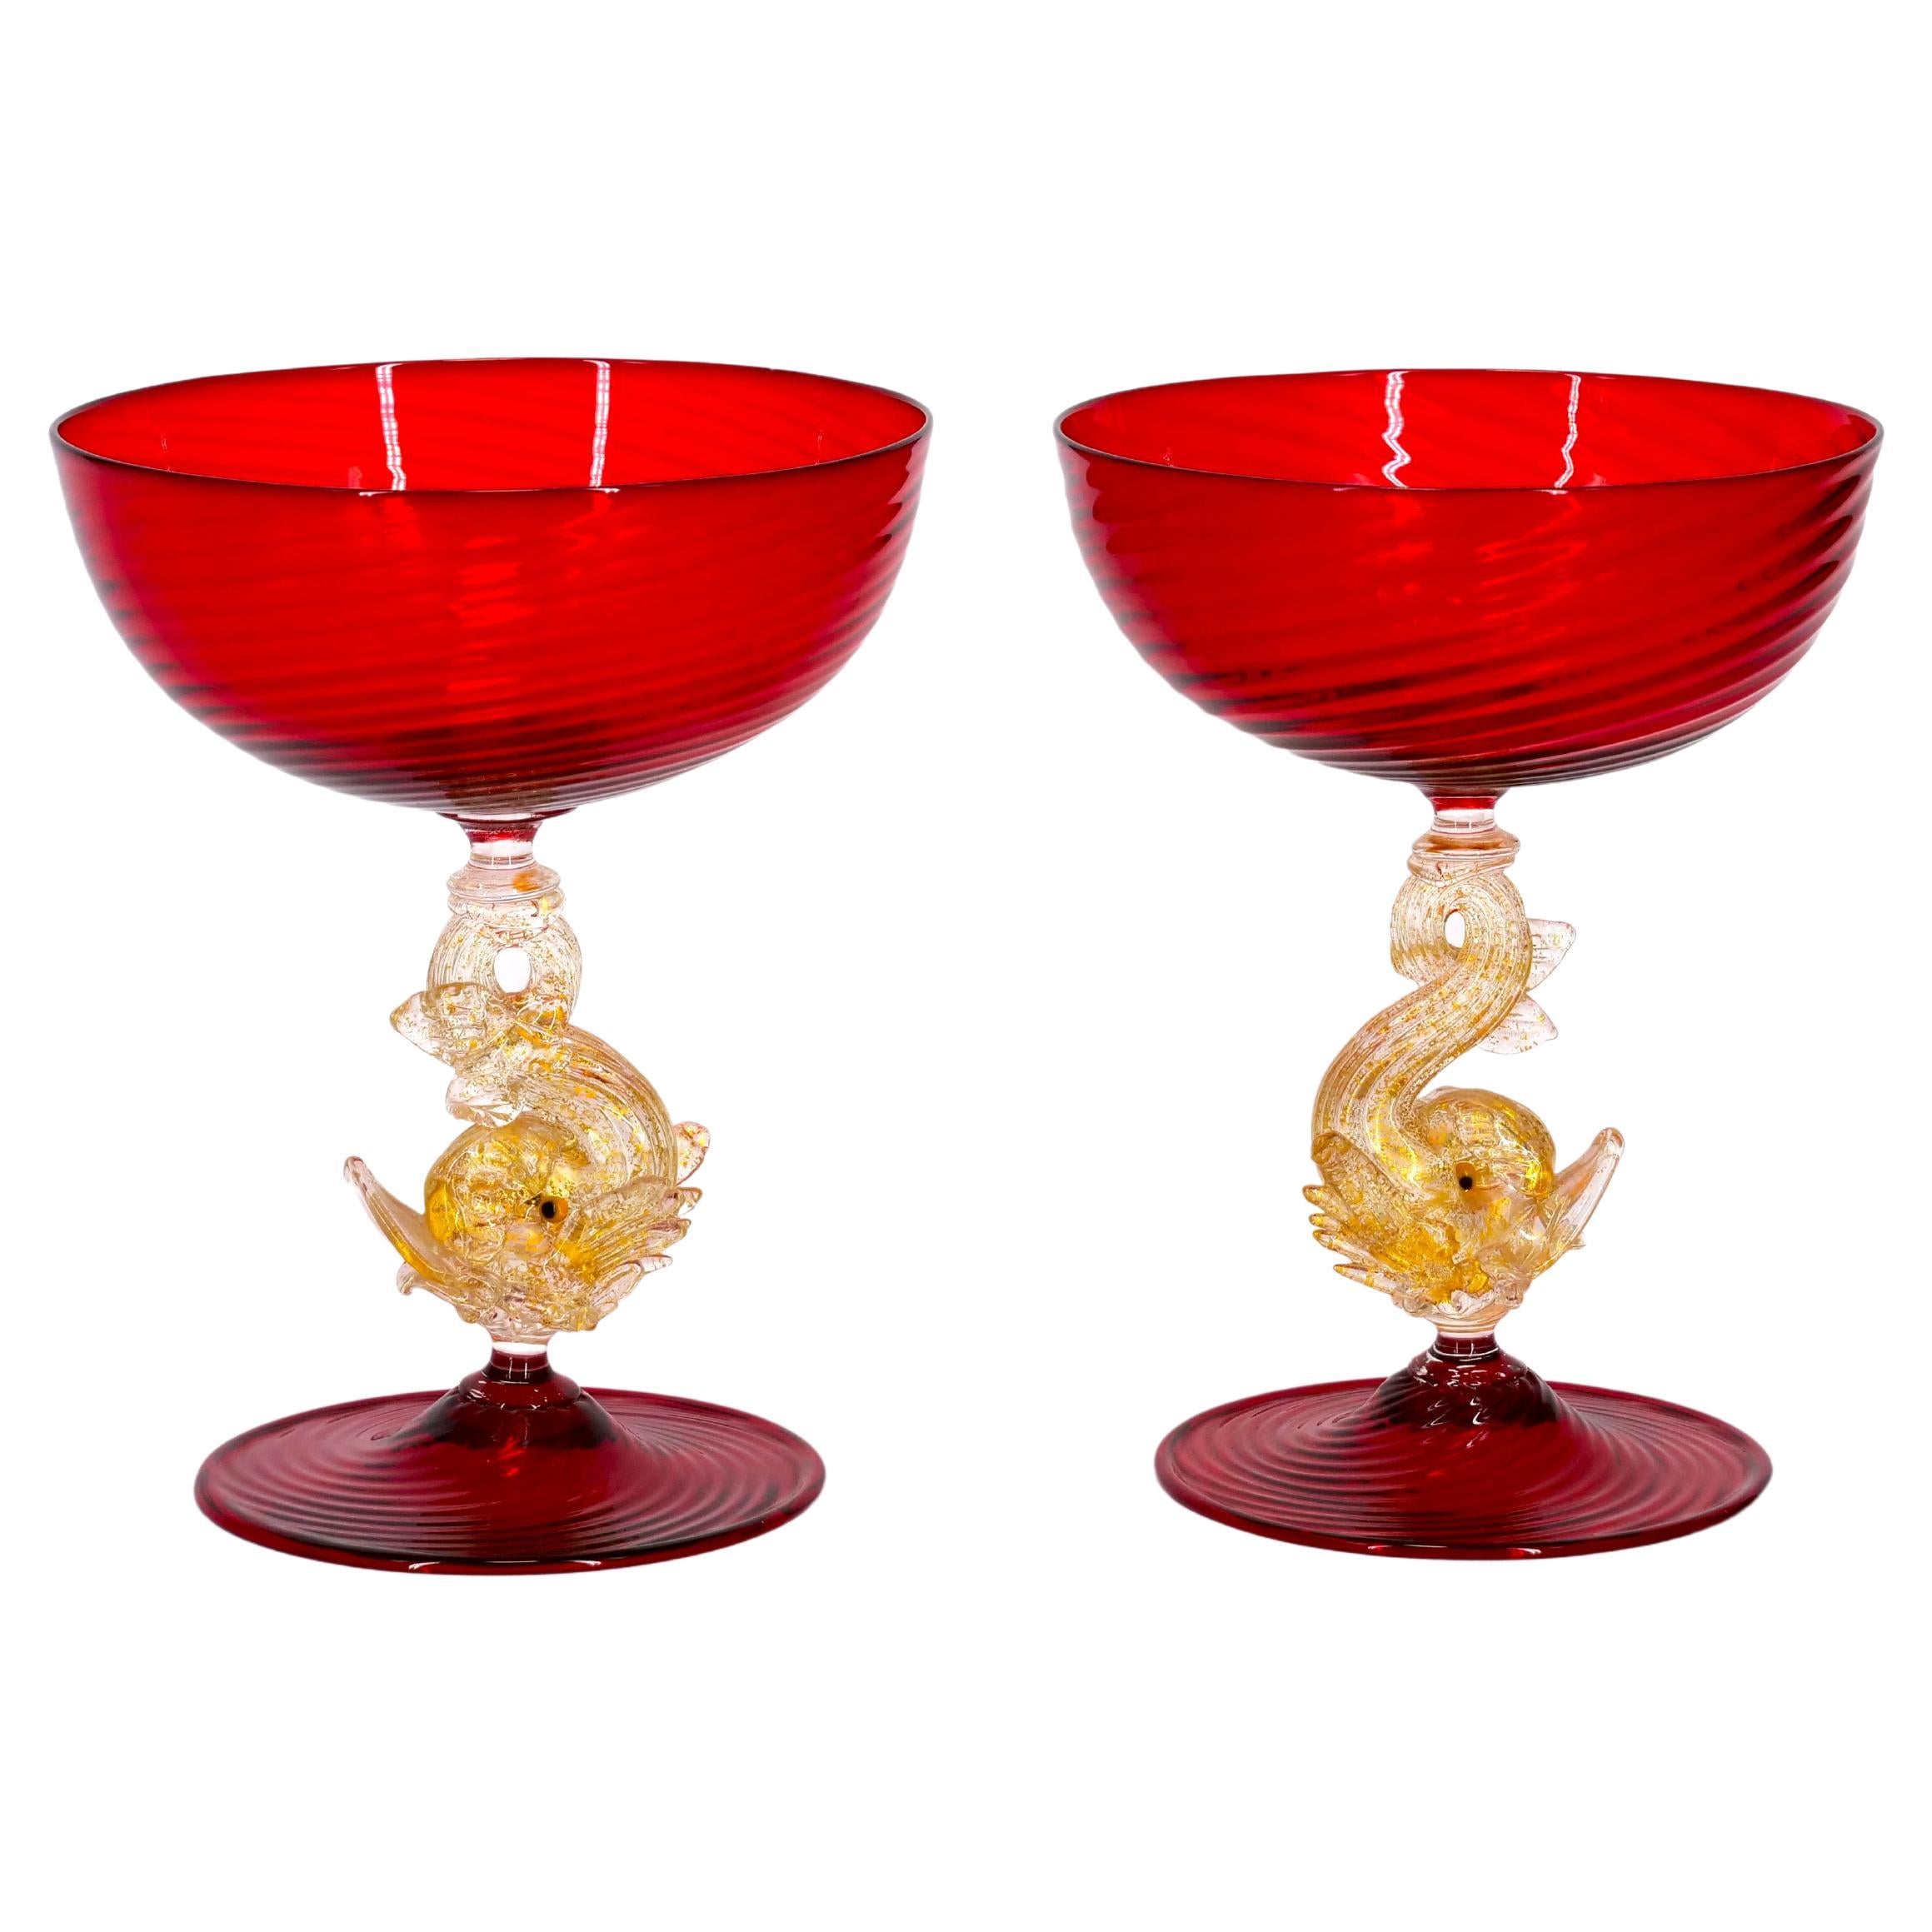 Hand-Crafted Murano Glass Barware / Tableware Set